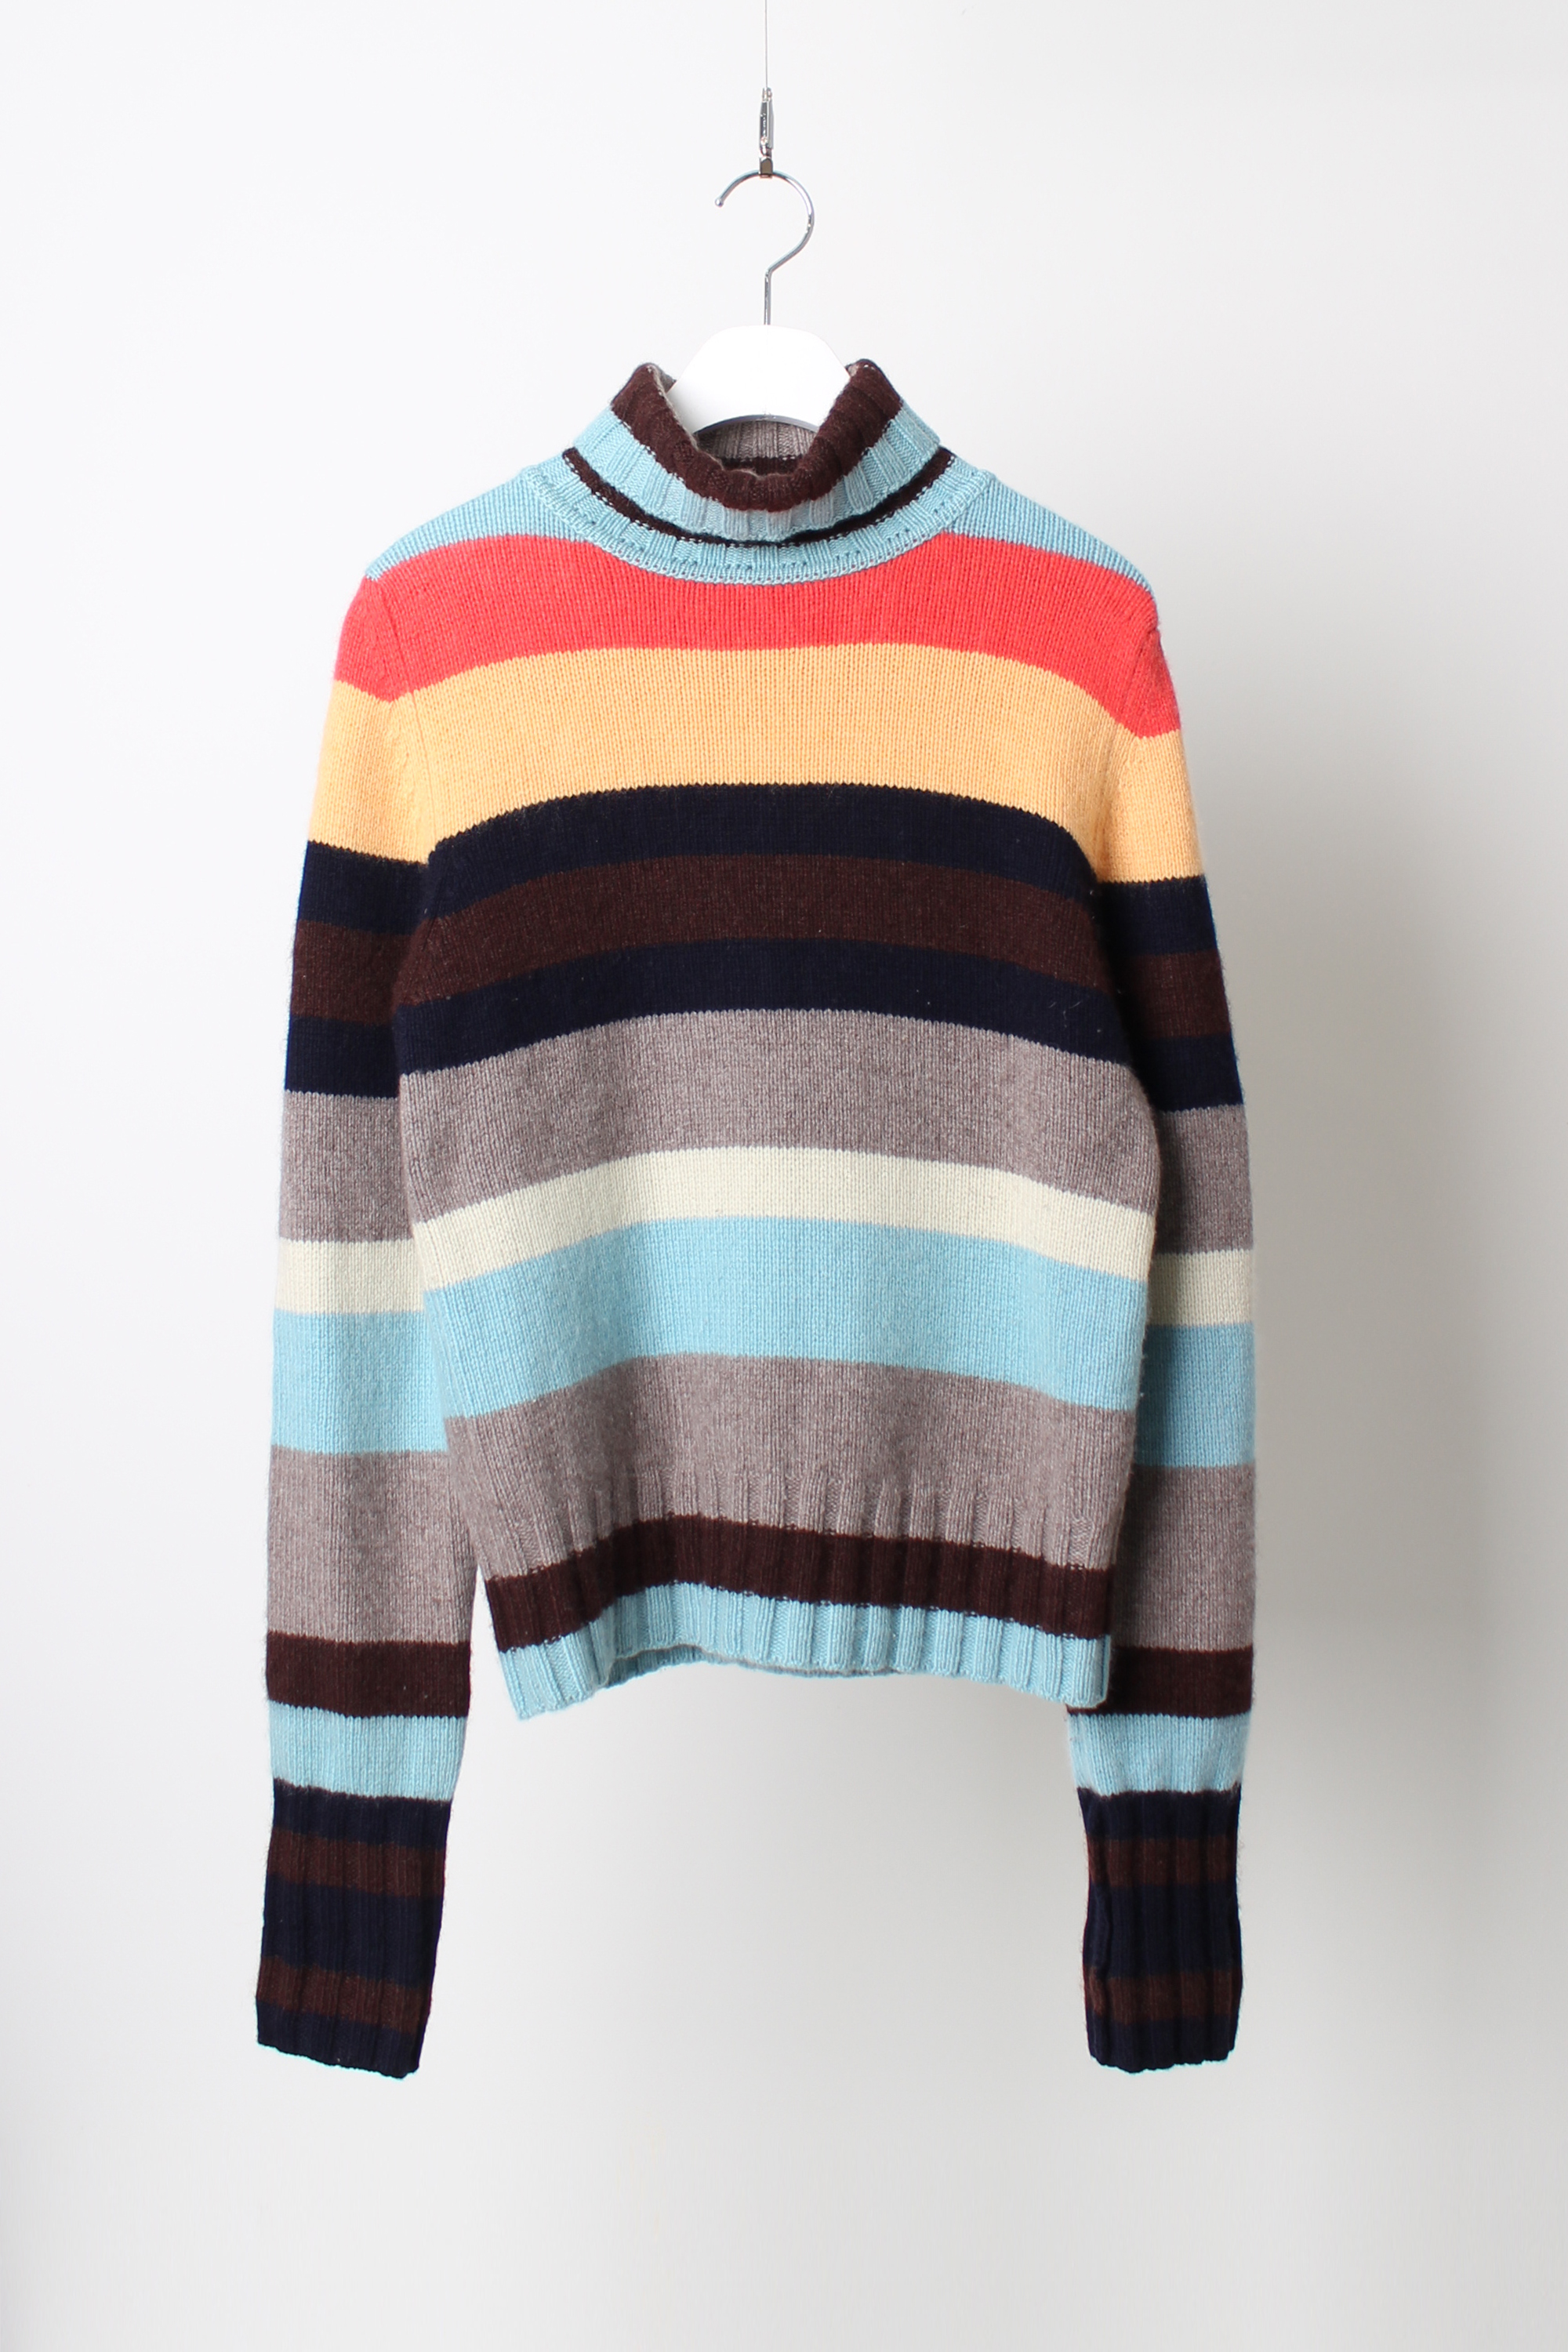 Murray Allan cashmere high neck knit